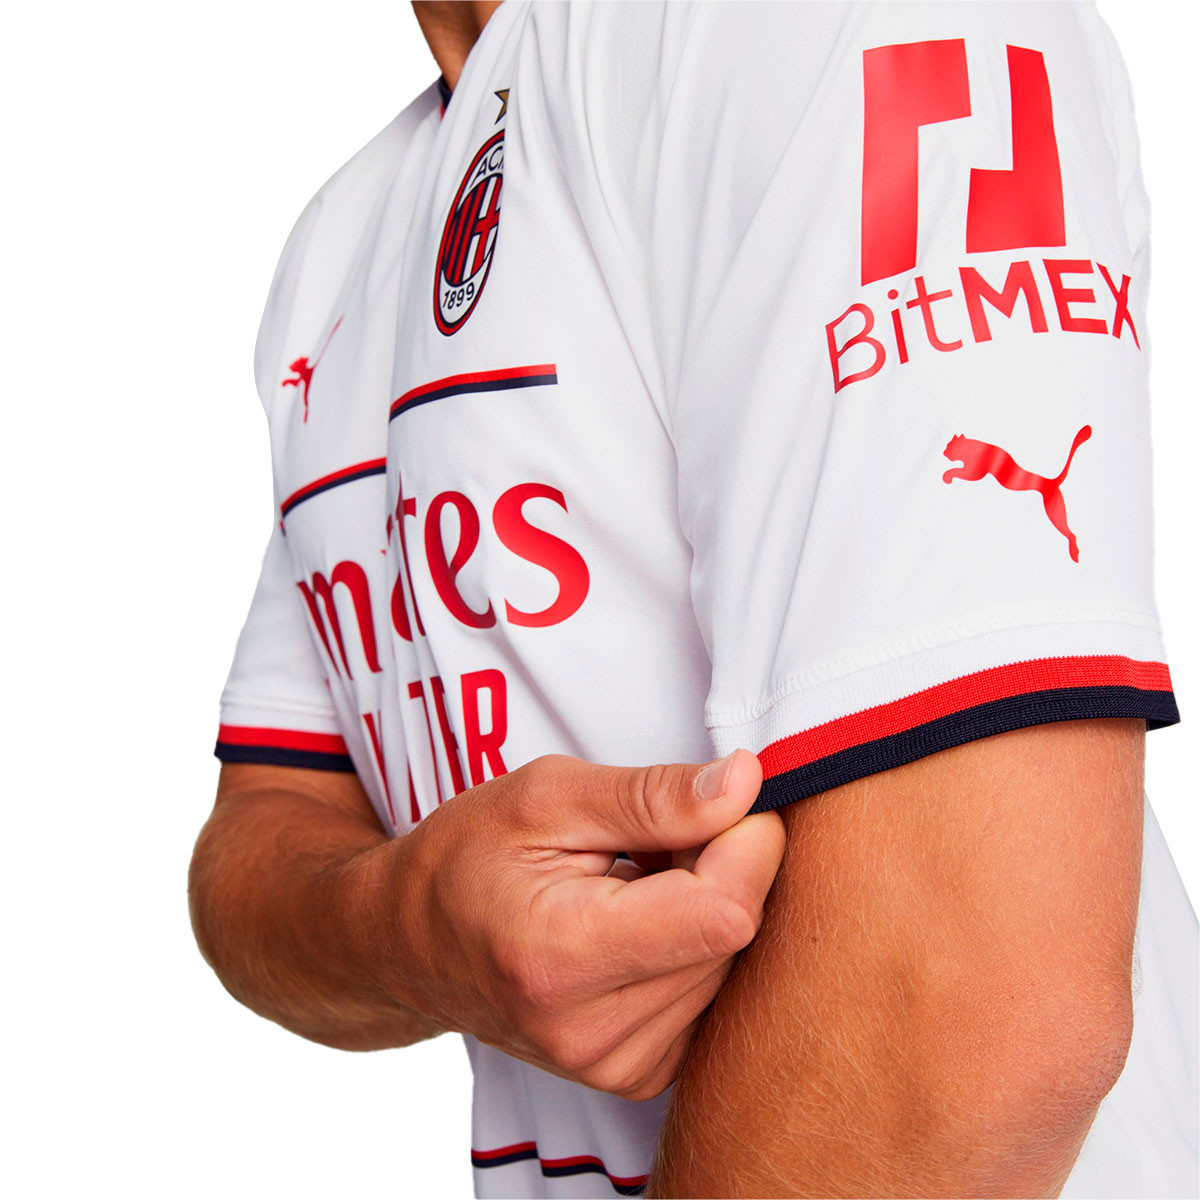 Puma AC Milan 22/23 away jersey - white/red - men's